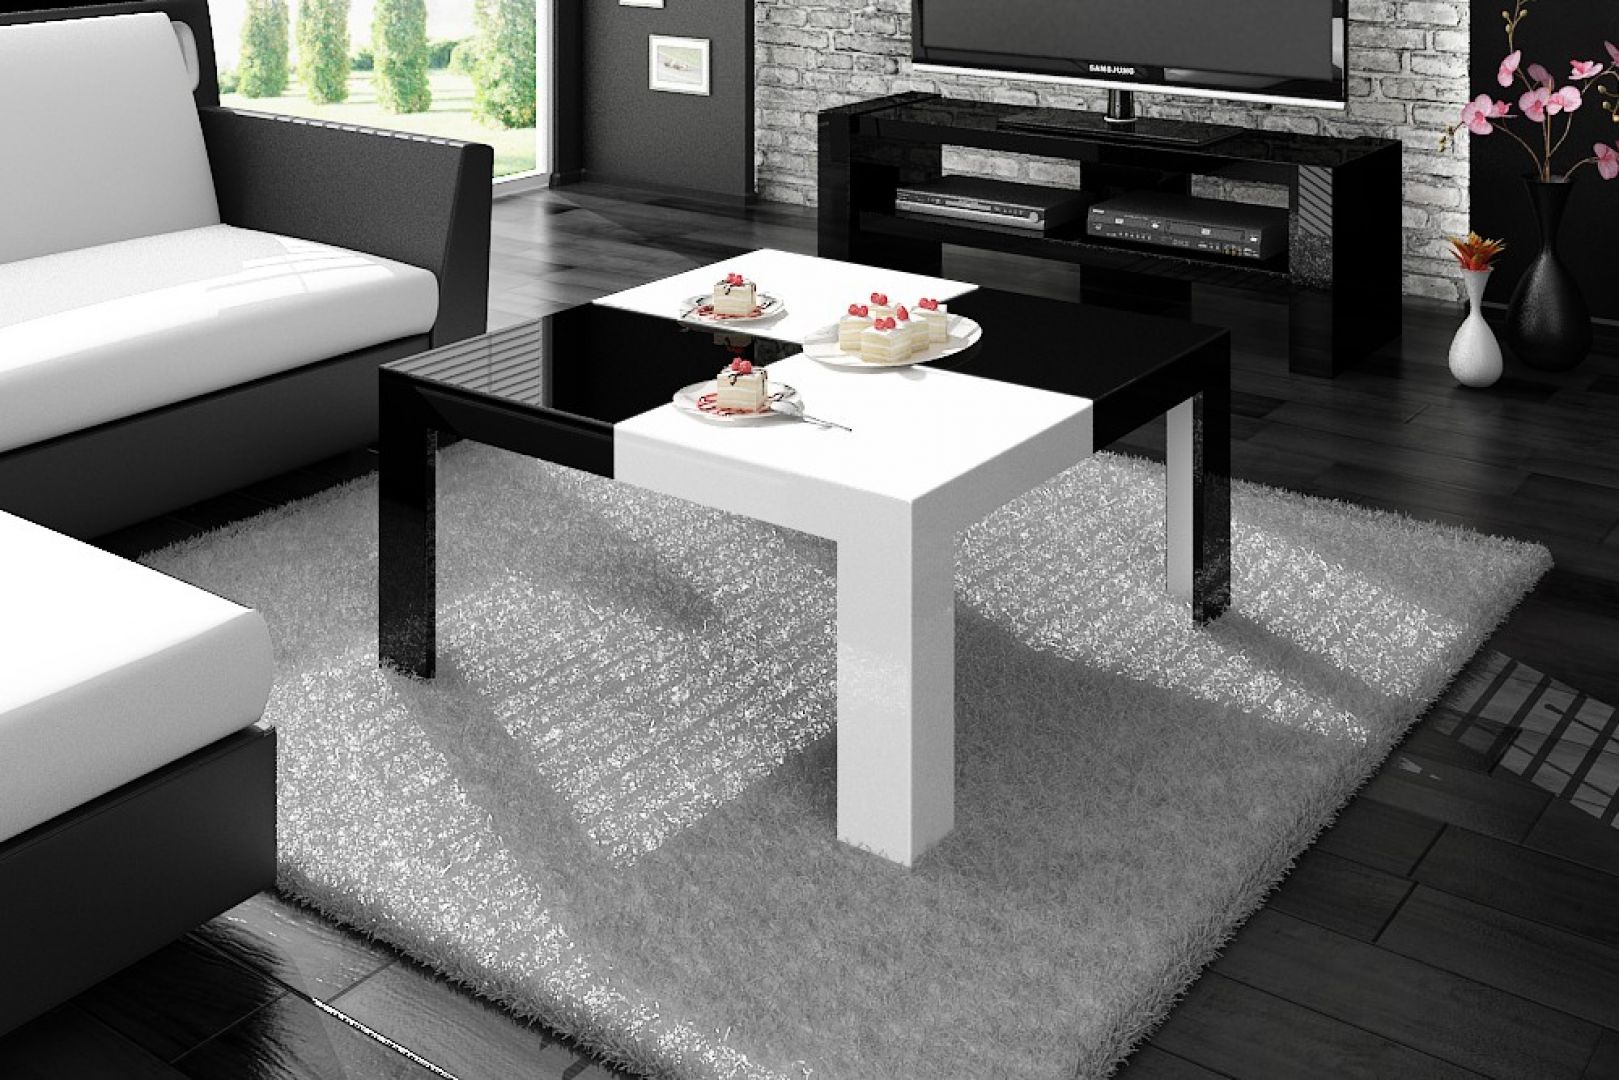 Nie możesz się zdecydować czy wolisz stolik w czarnym czy białym kolorze? Wybierz model 